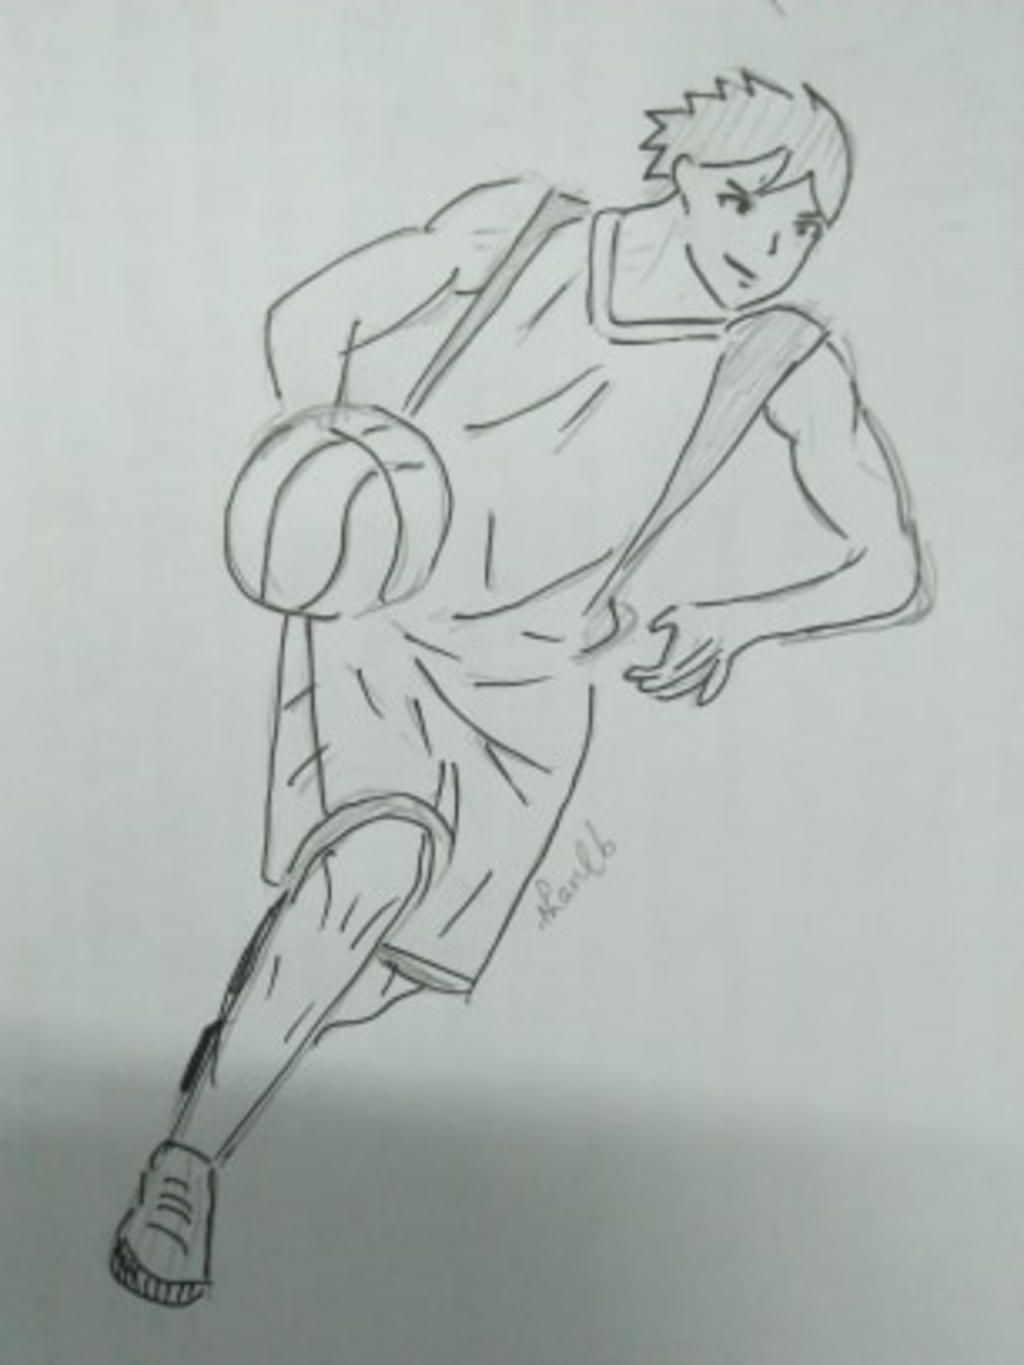 Vẽ 1 anime nam đang chơi bóng rổ Vẽ full người , vẽ dáng đánh bóng đẹp 1  chút Không màu có line Yêu cầu chỉ người vẽ đẹp hẵng vào :)  -----------------------